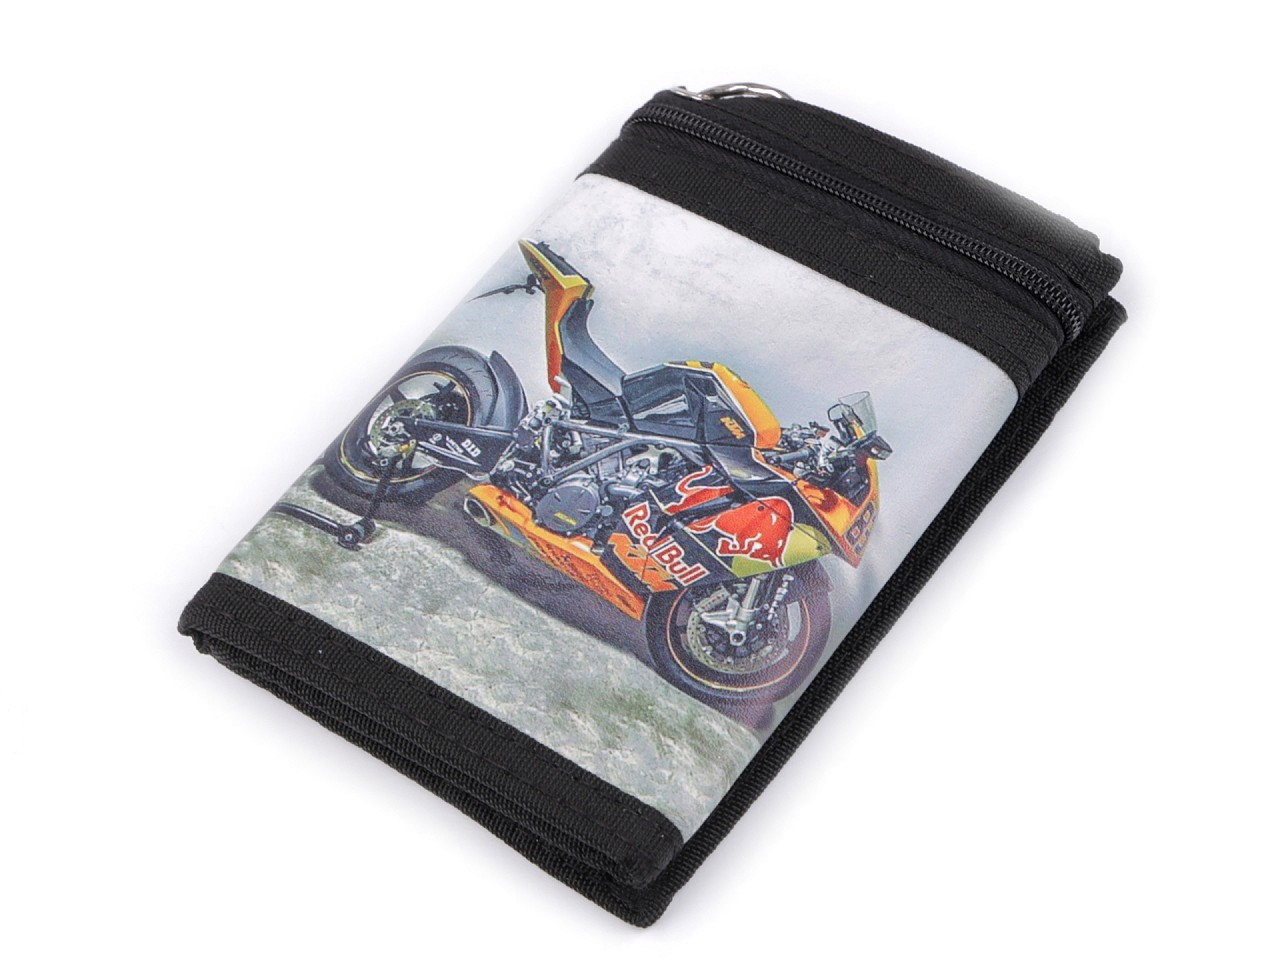 Textilní peněženka s řetízkem, barva 10 šedozelená sv. motorka